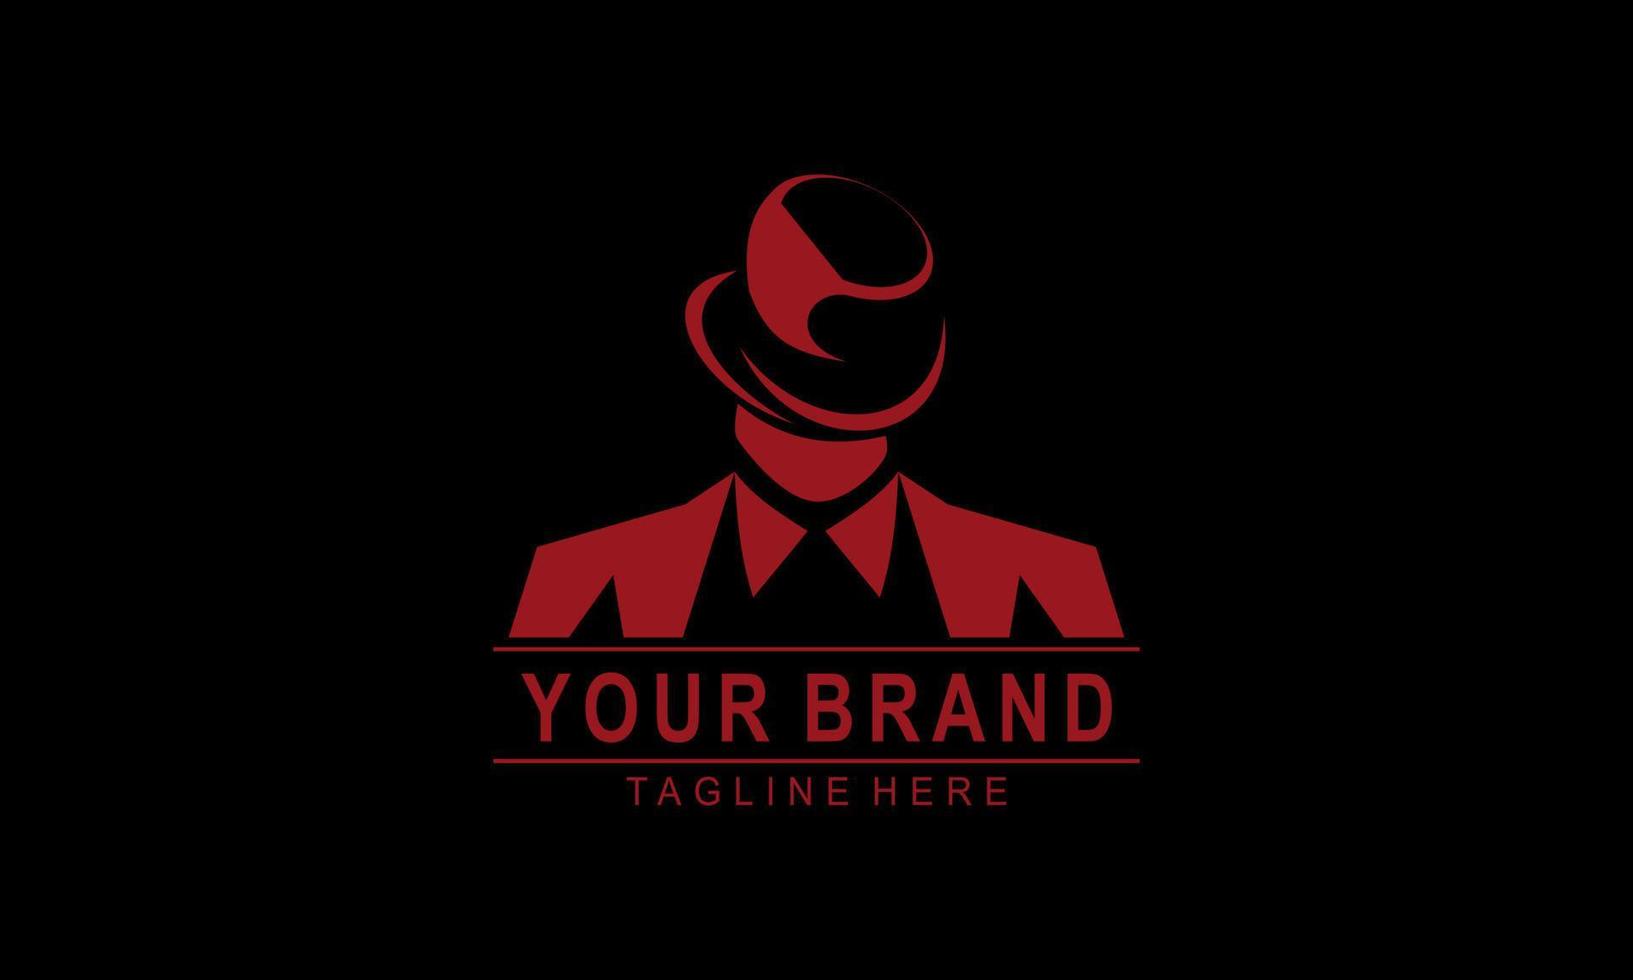 emblèmes du logo de la mafia avec la tête d'hommes de silhouette abstraite de caractère au chapeau. illustration vectorielle vintage vecteur